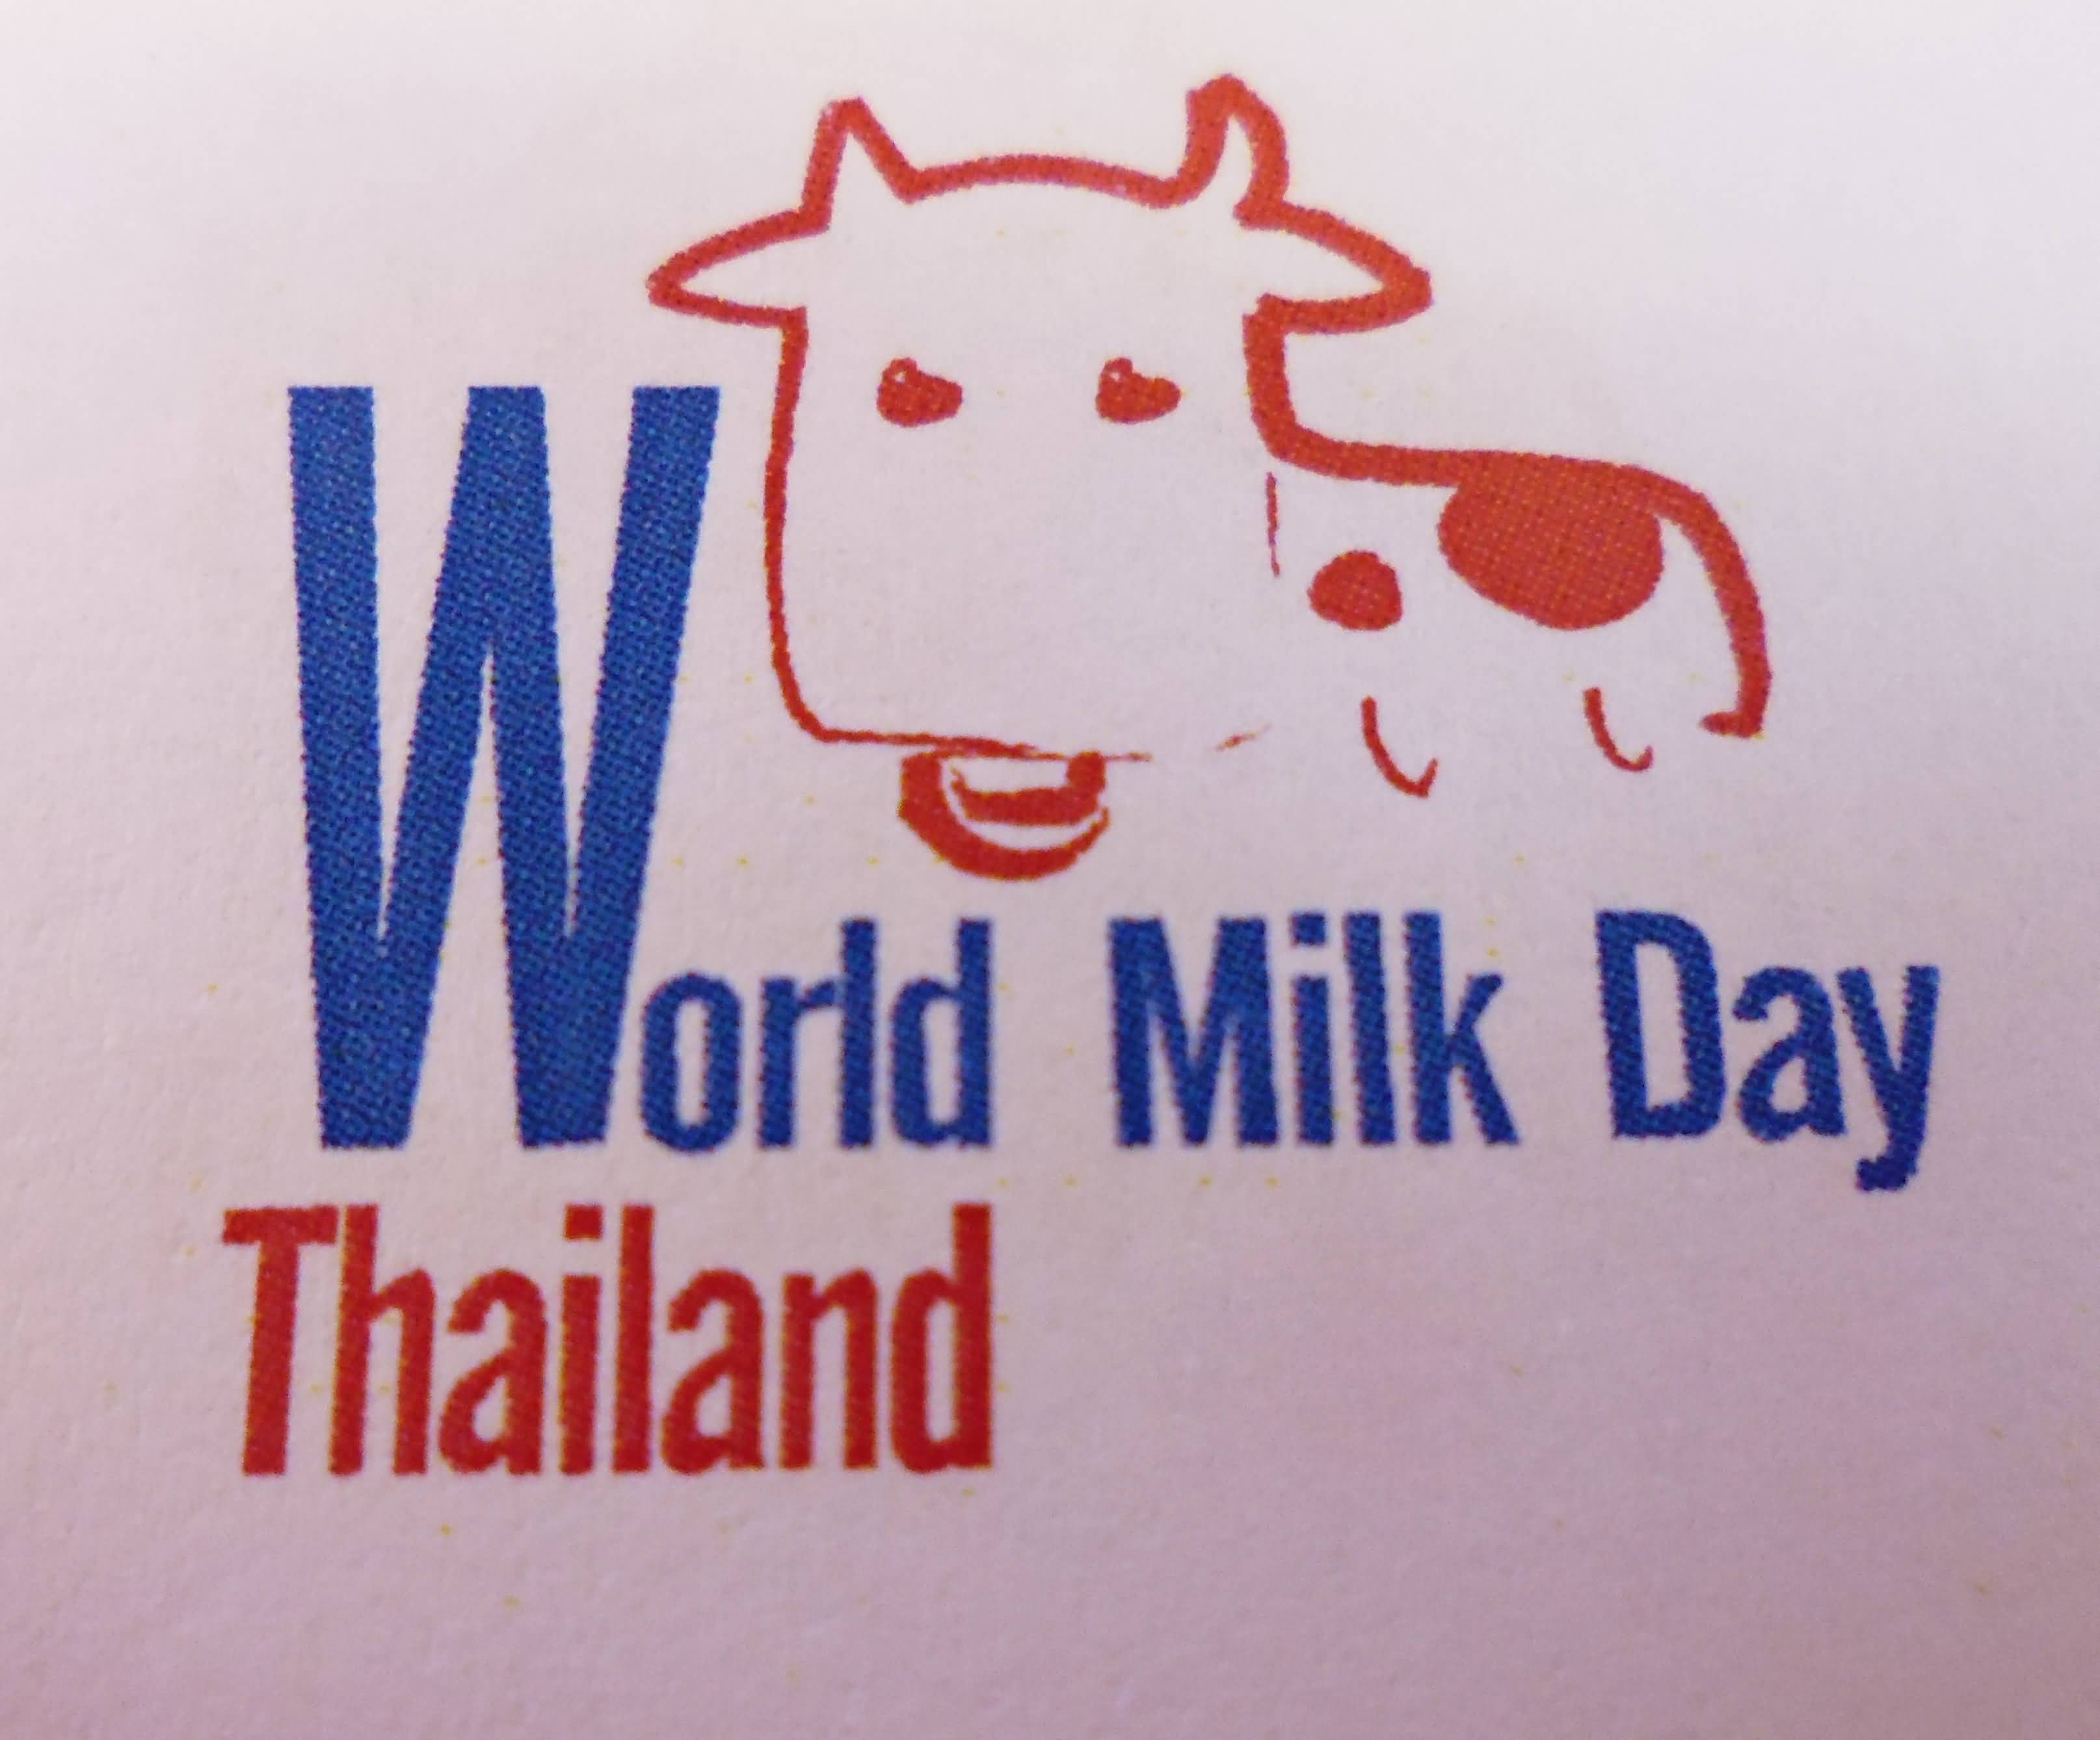 World Milk Day Thailand Wishes Image